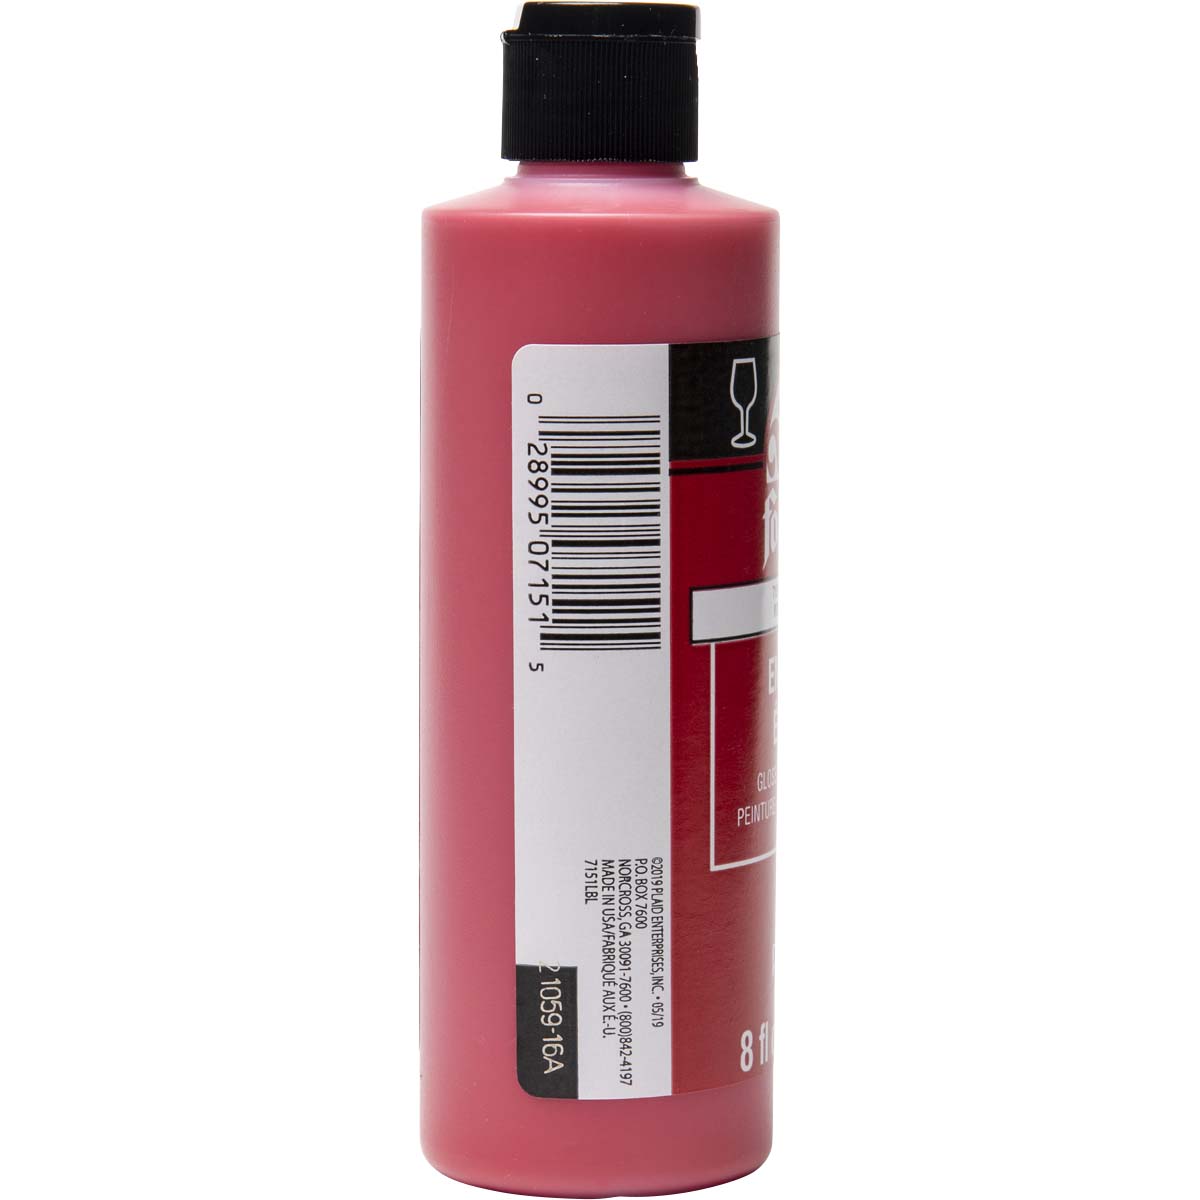 FolkArt ® Enamels™ - Lipstick Red, 8 oz. - 7151